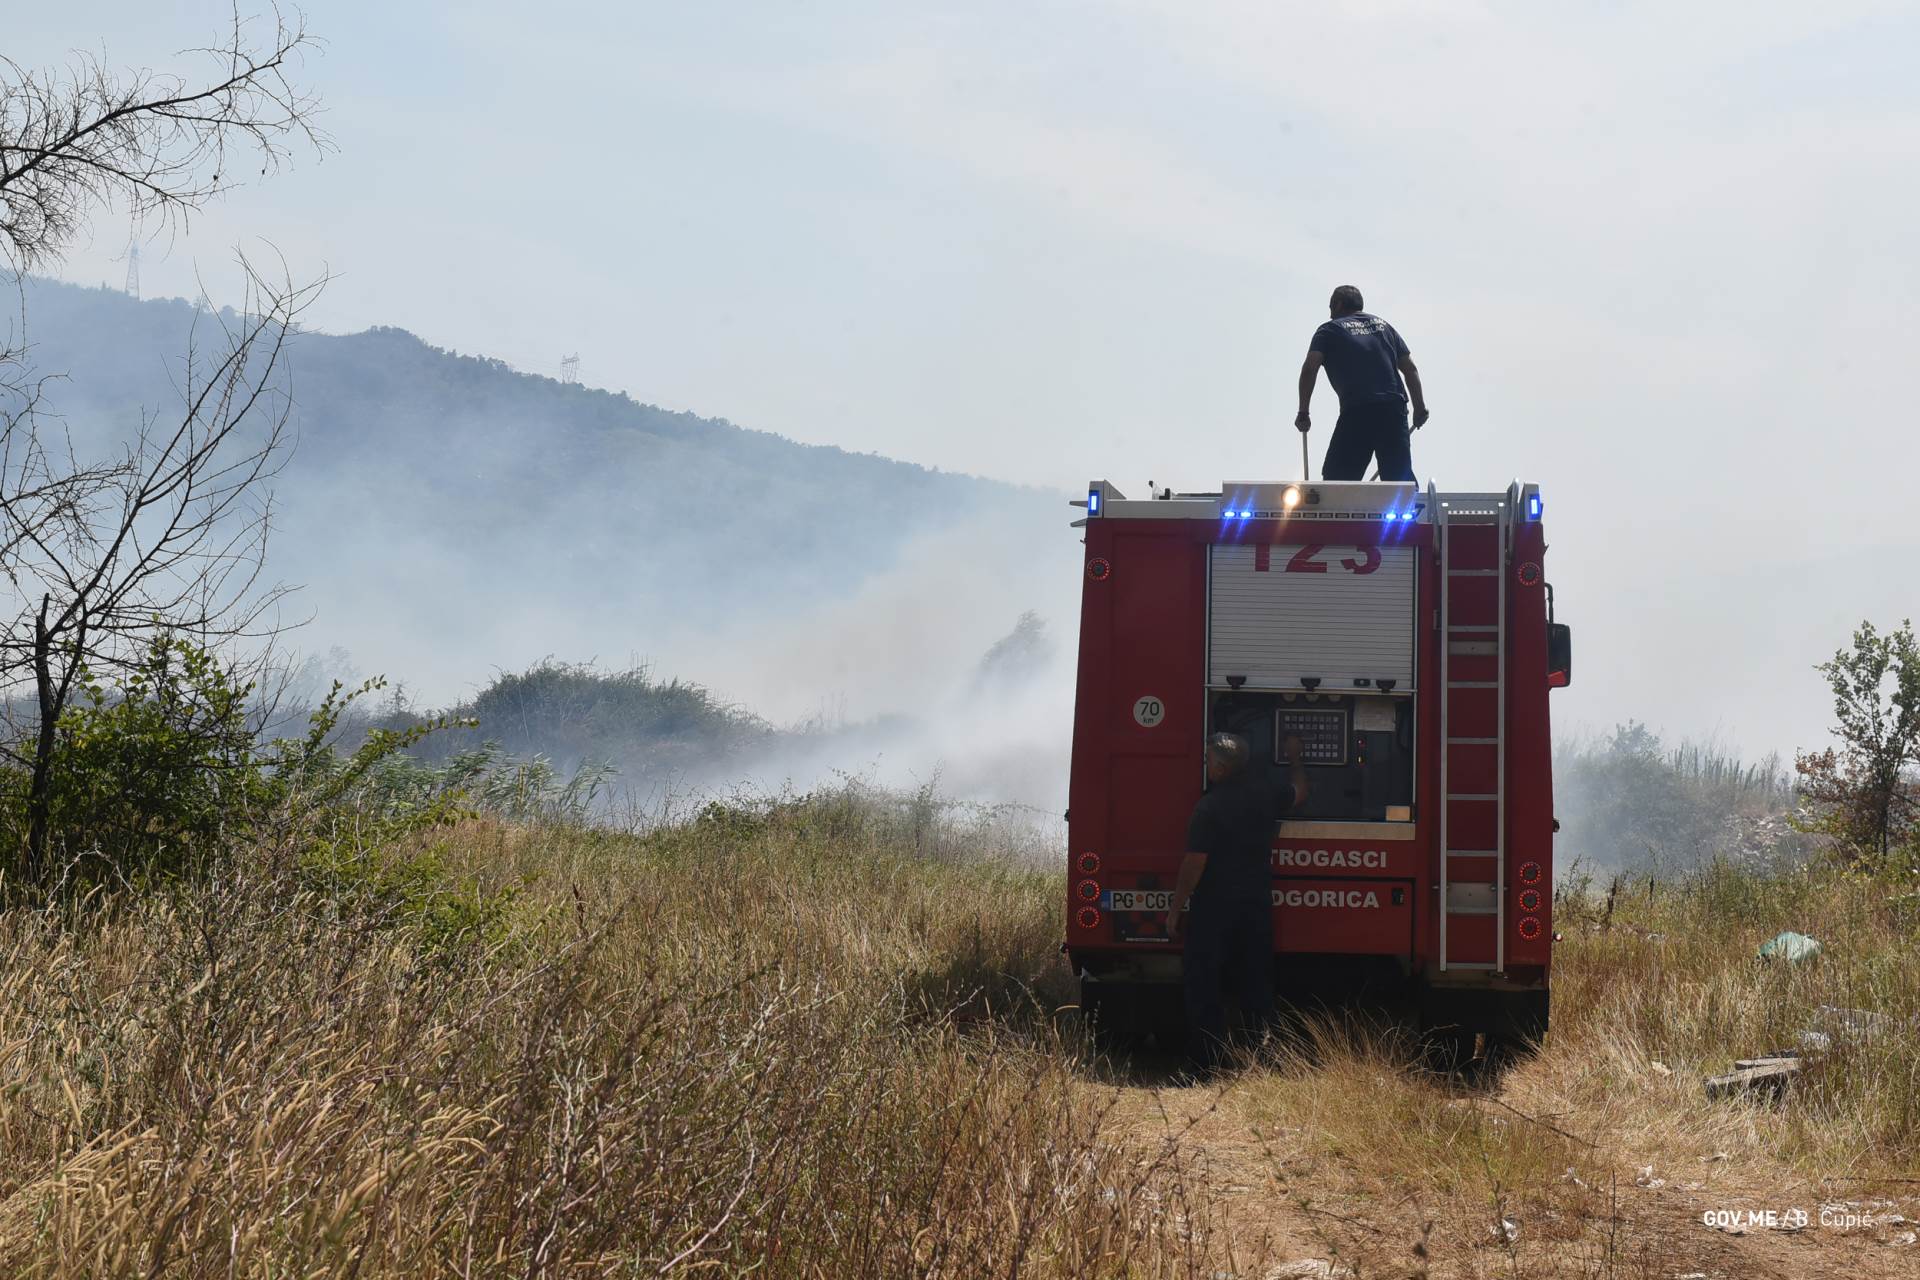  Aktivni požari u Gornjim Mrkama i Katunskoj nahiji 